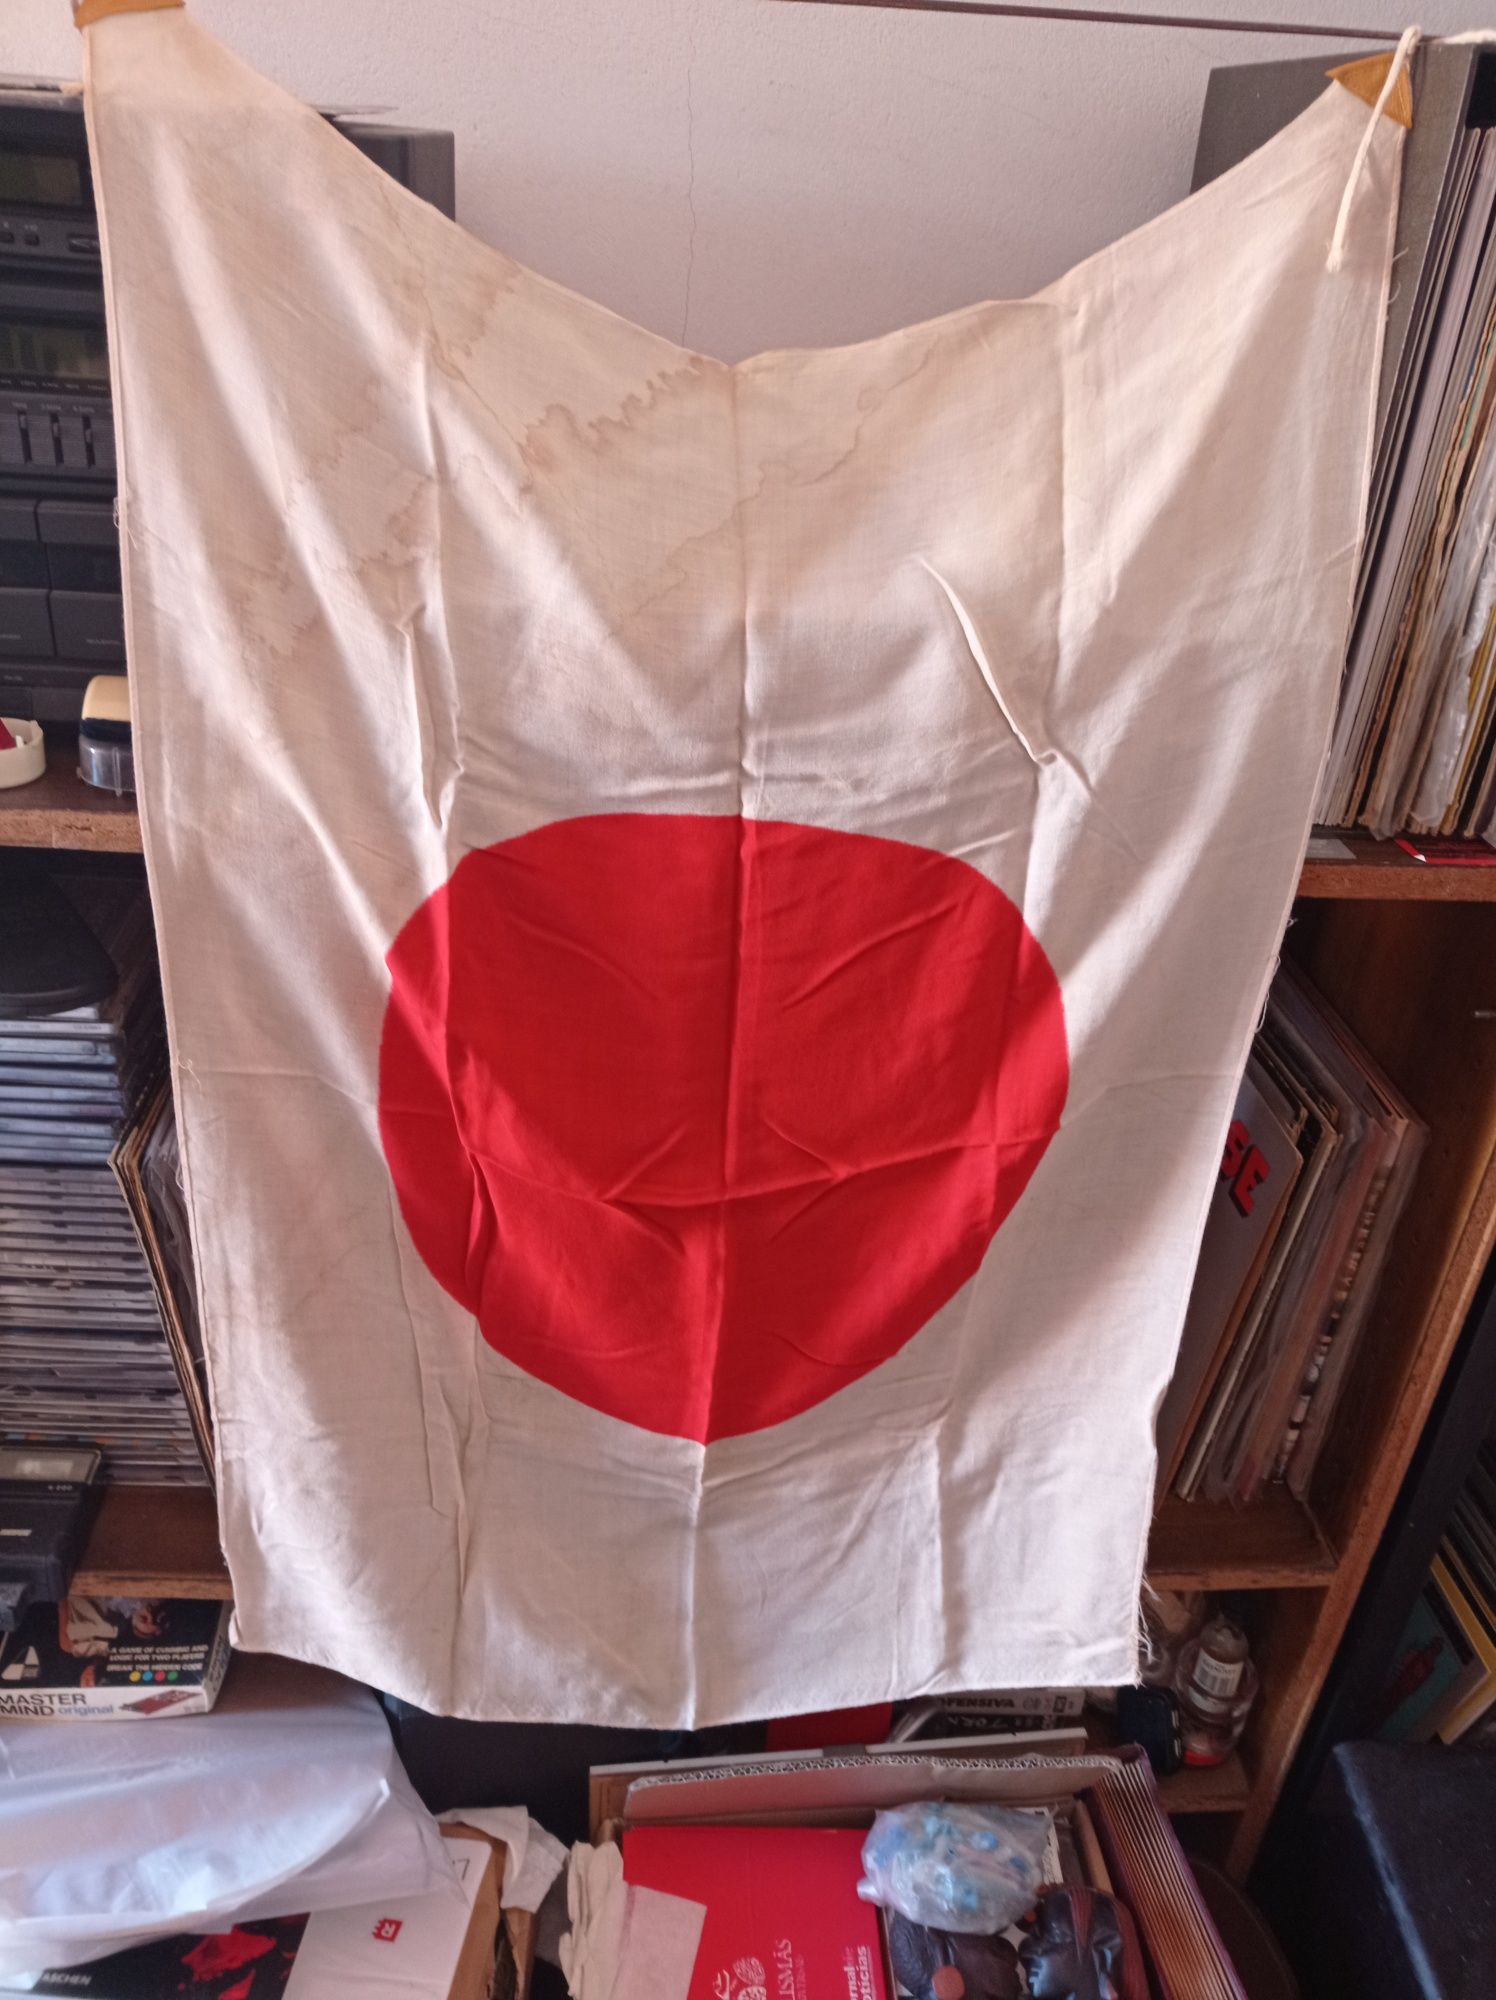 Bandeira japonesa e USA ww2